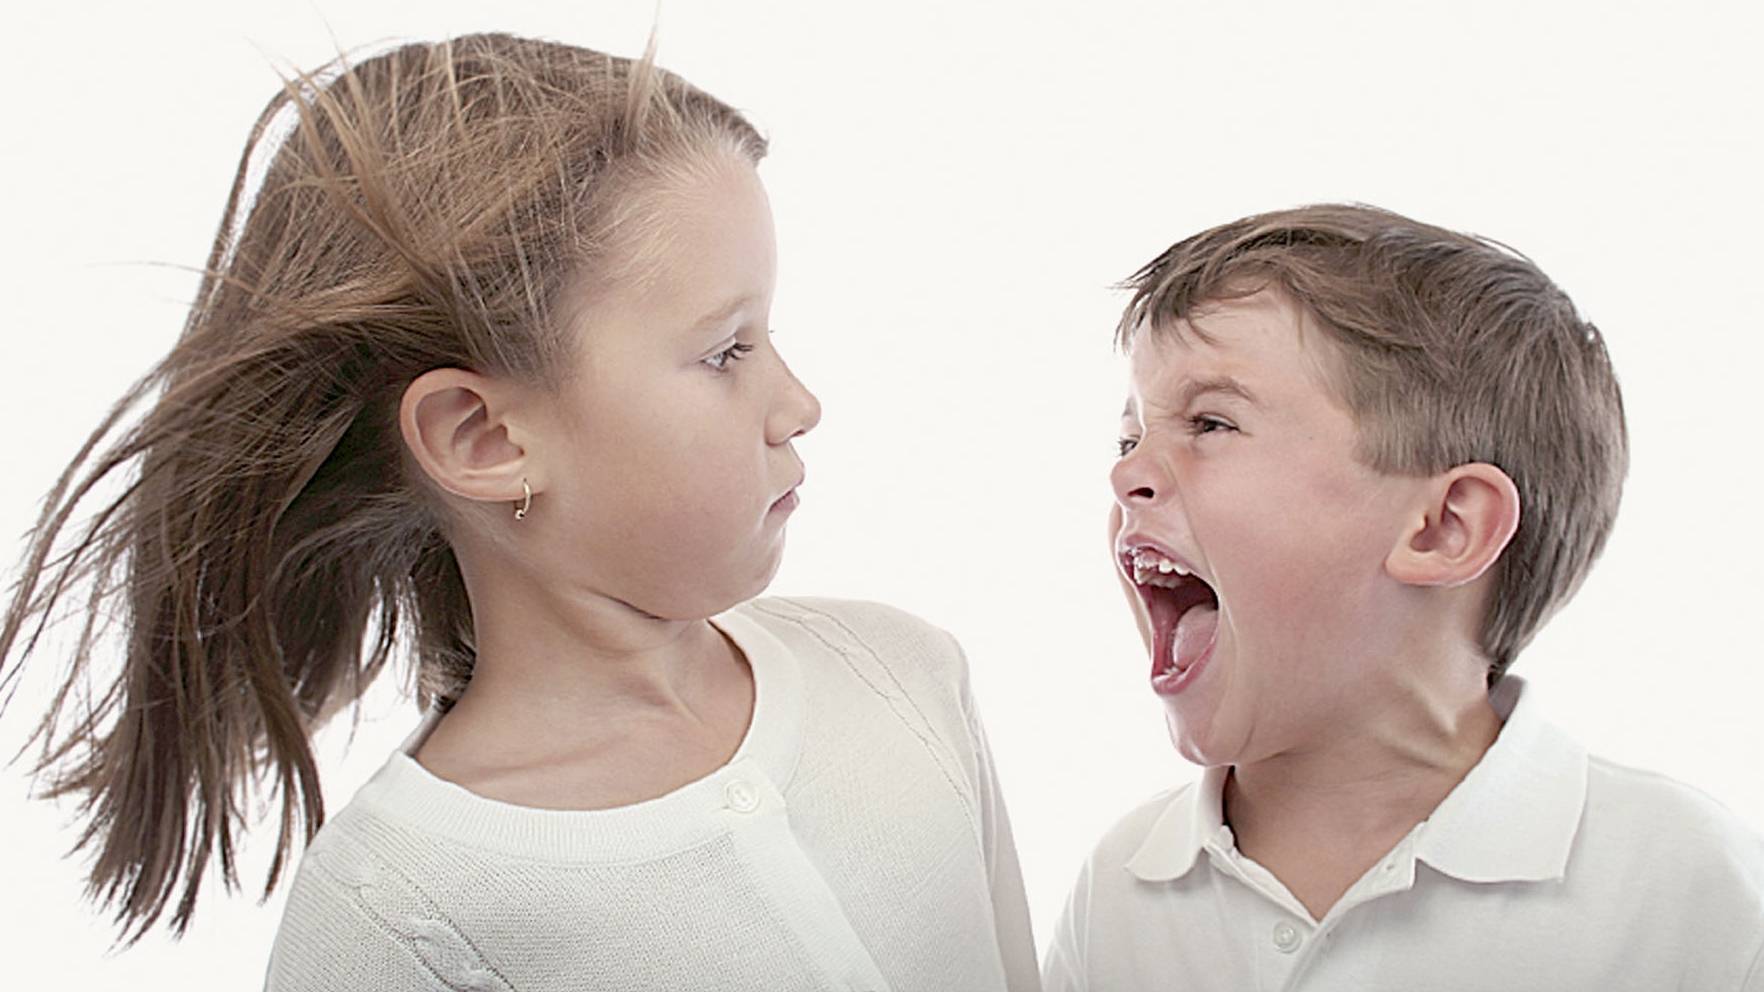 Детская злость: как помочь «маленькому монстру» справиться с непростым чувством